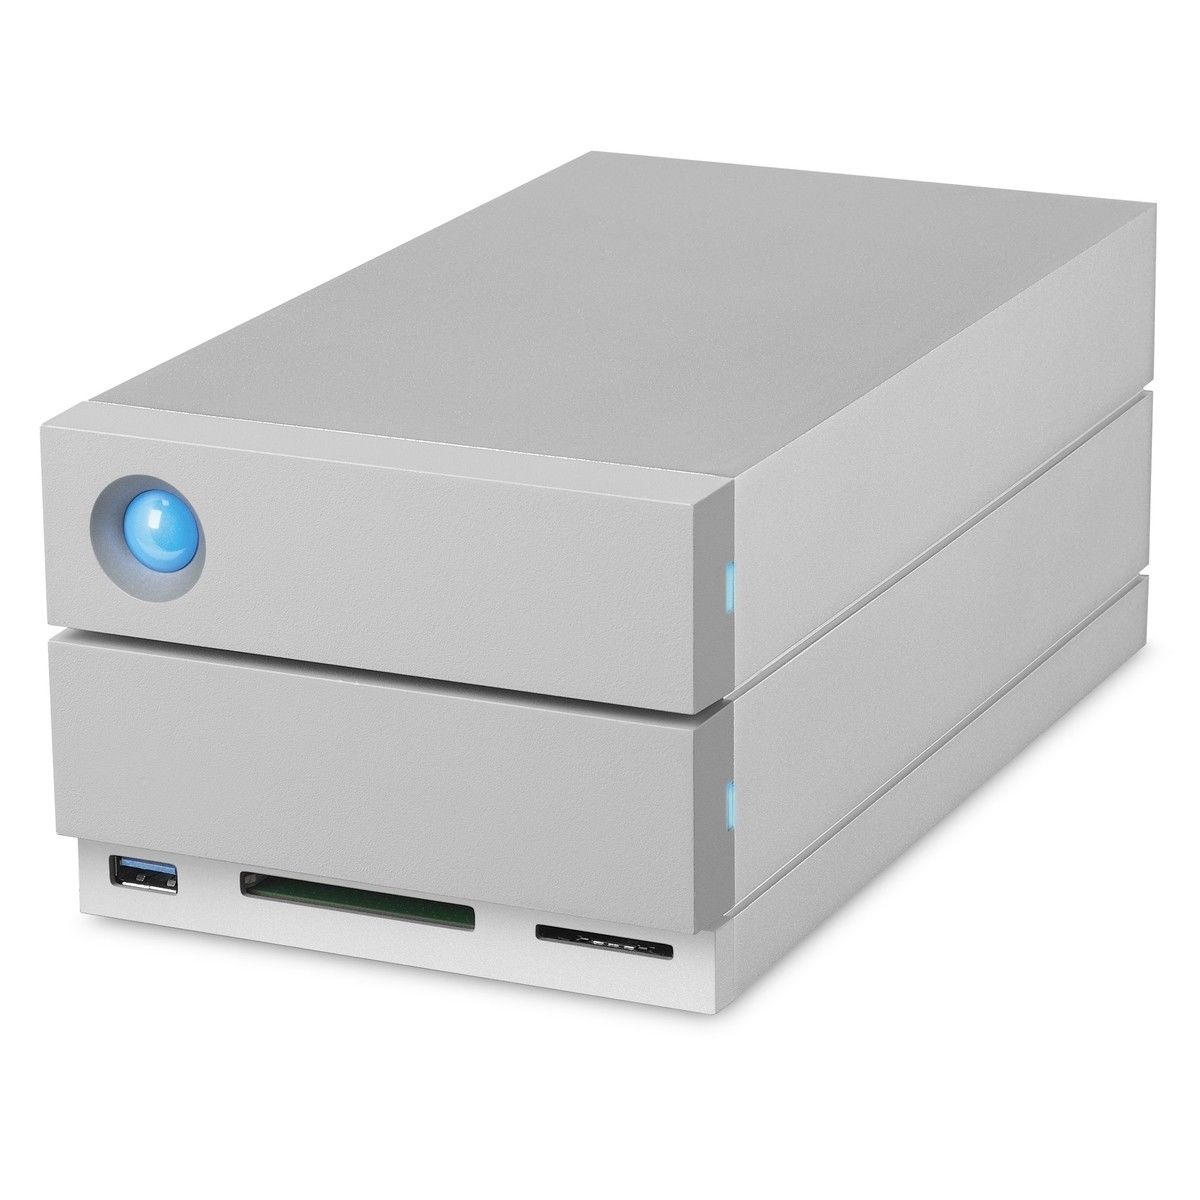 LaCie 2big Dock Thunderbolt 3 20TB DAS Storage System STGB20000400